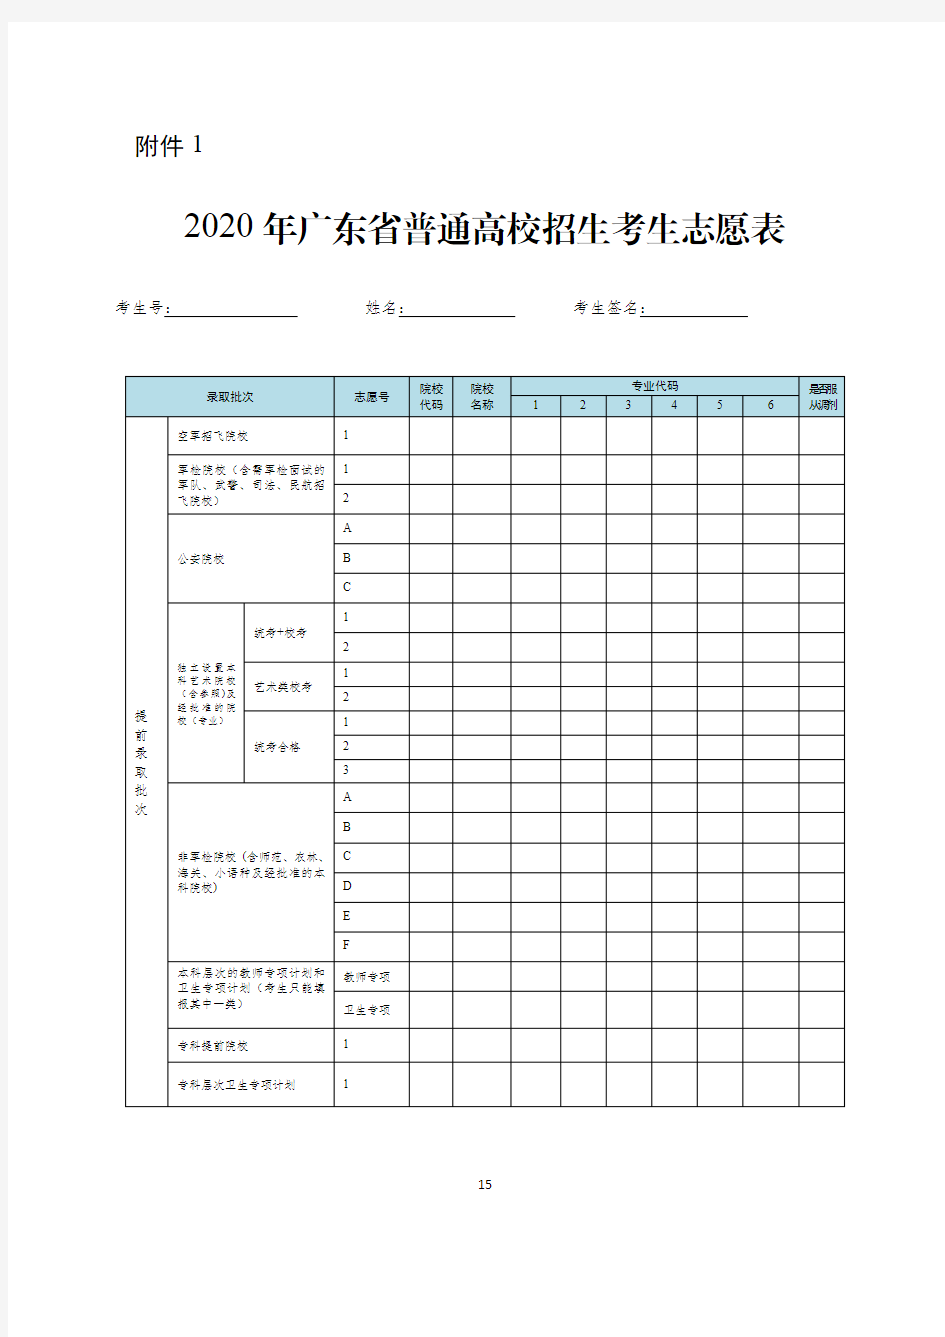 2020年广东省普通高校招生考生志愿表